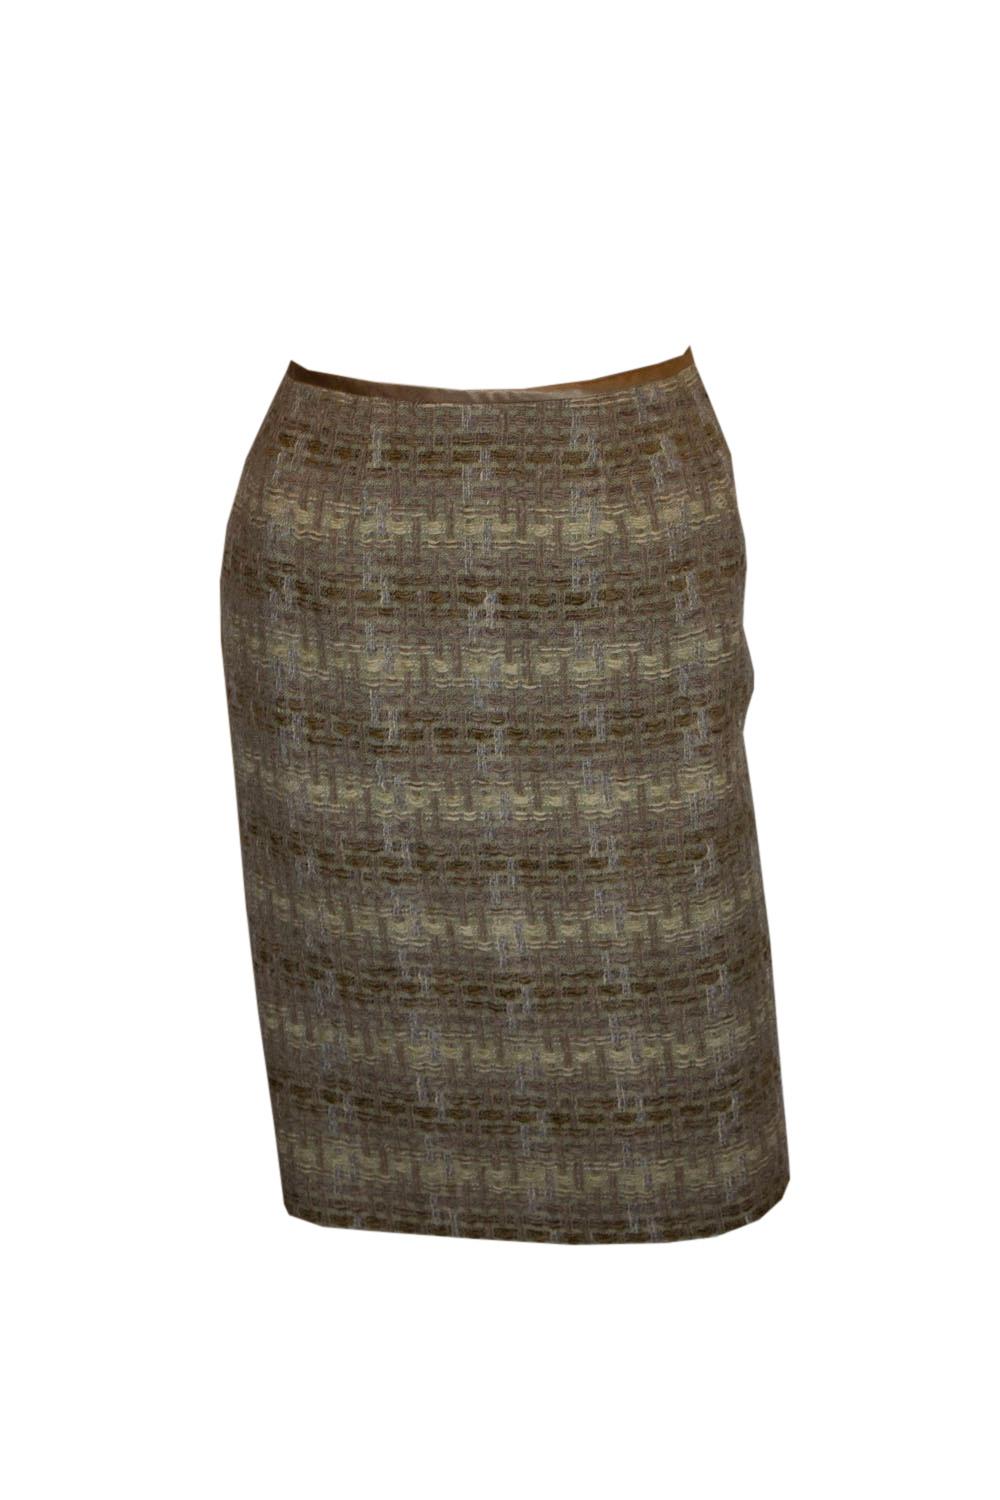 Vintage Jean Muir Main Line  Tweed Skirt For Sale 2